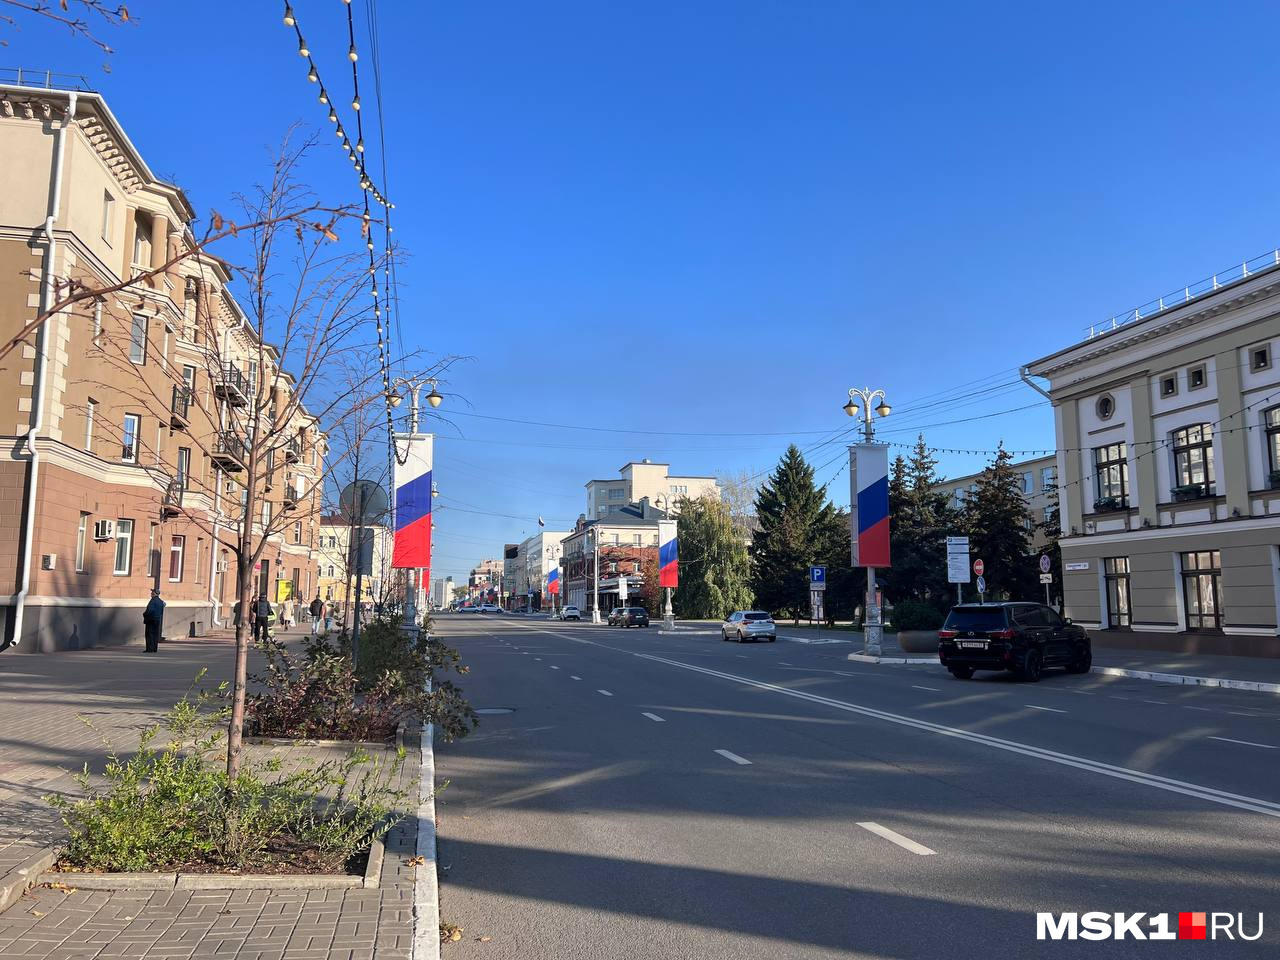 Жители Белгорода поражают своим спокойствием — неторопливая размеренная жизнь в городе идет своим чередом даже во время обстрелов